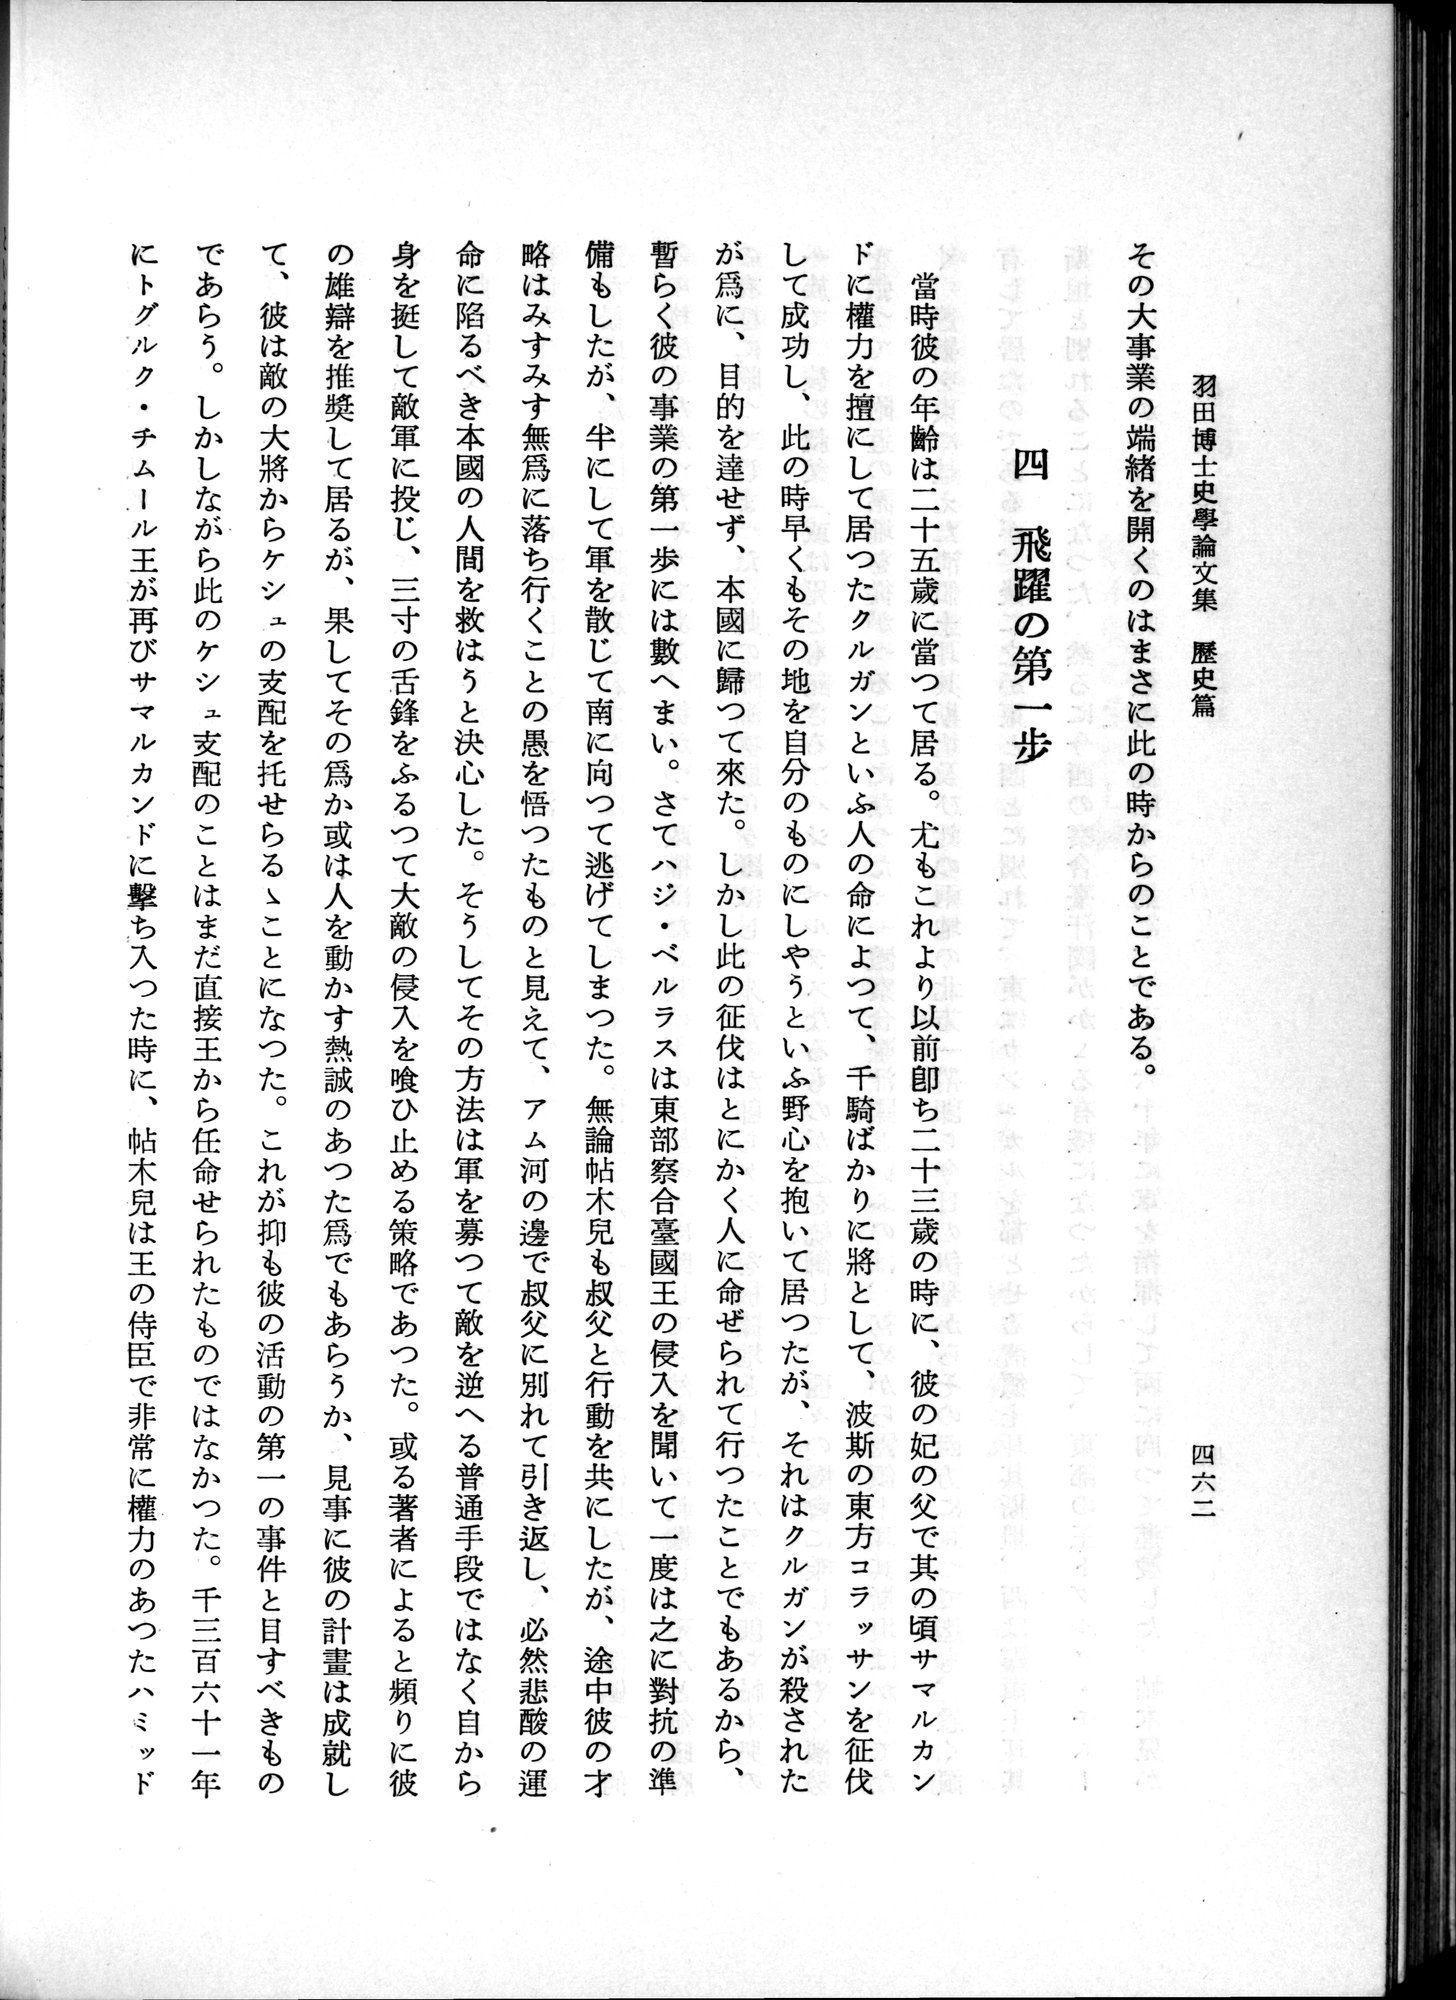 羽田博士史学論文集 : vol.1 / Page 500 (Grayscale High Resolution Image)